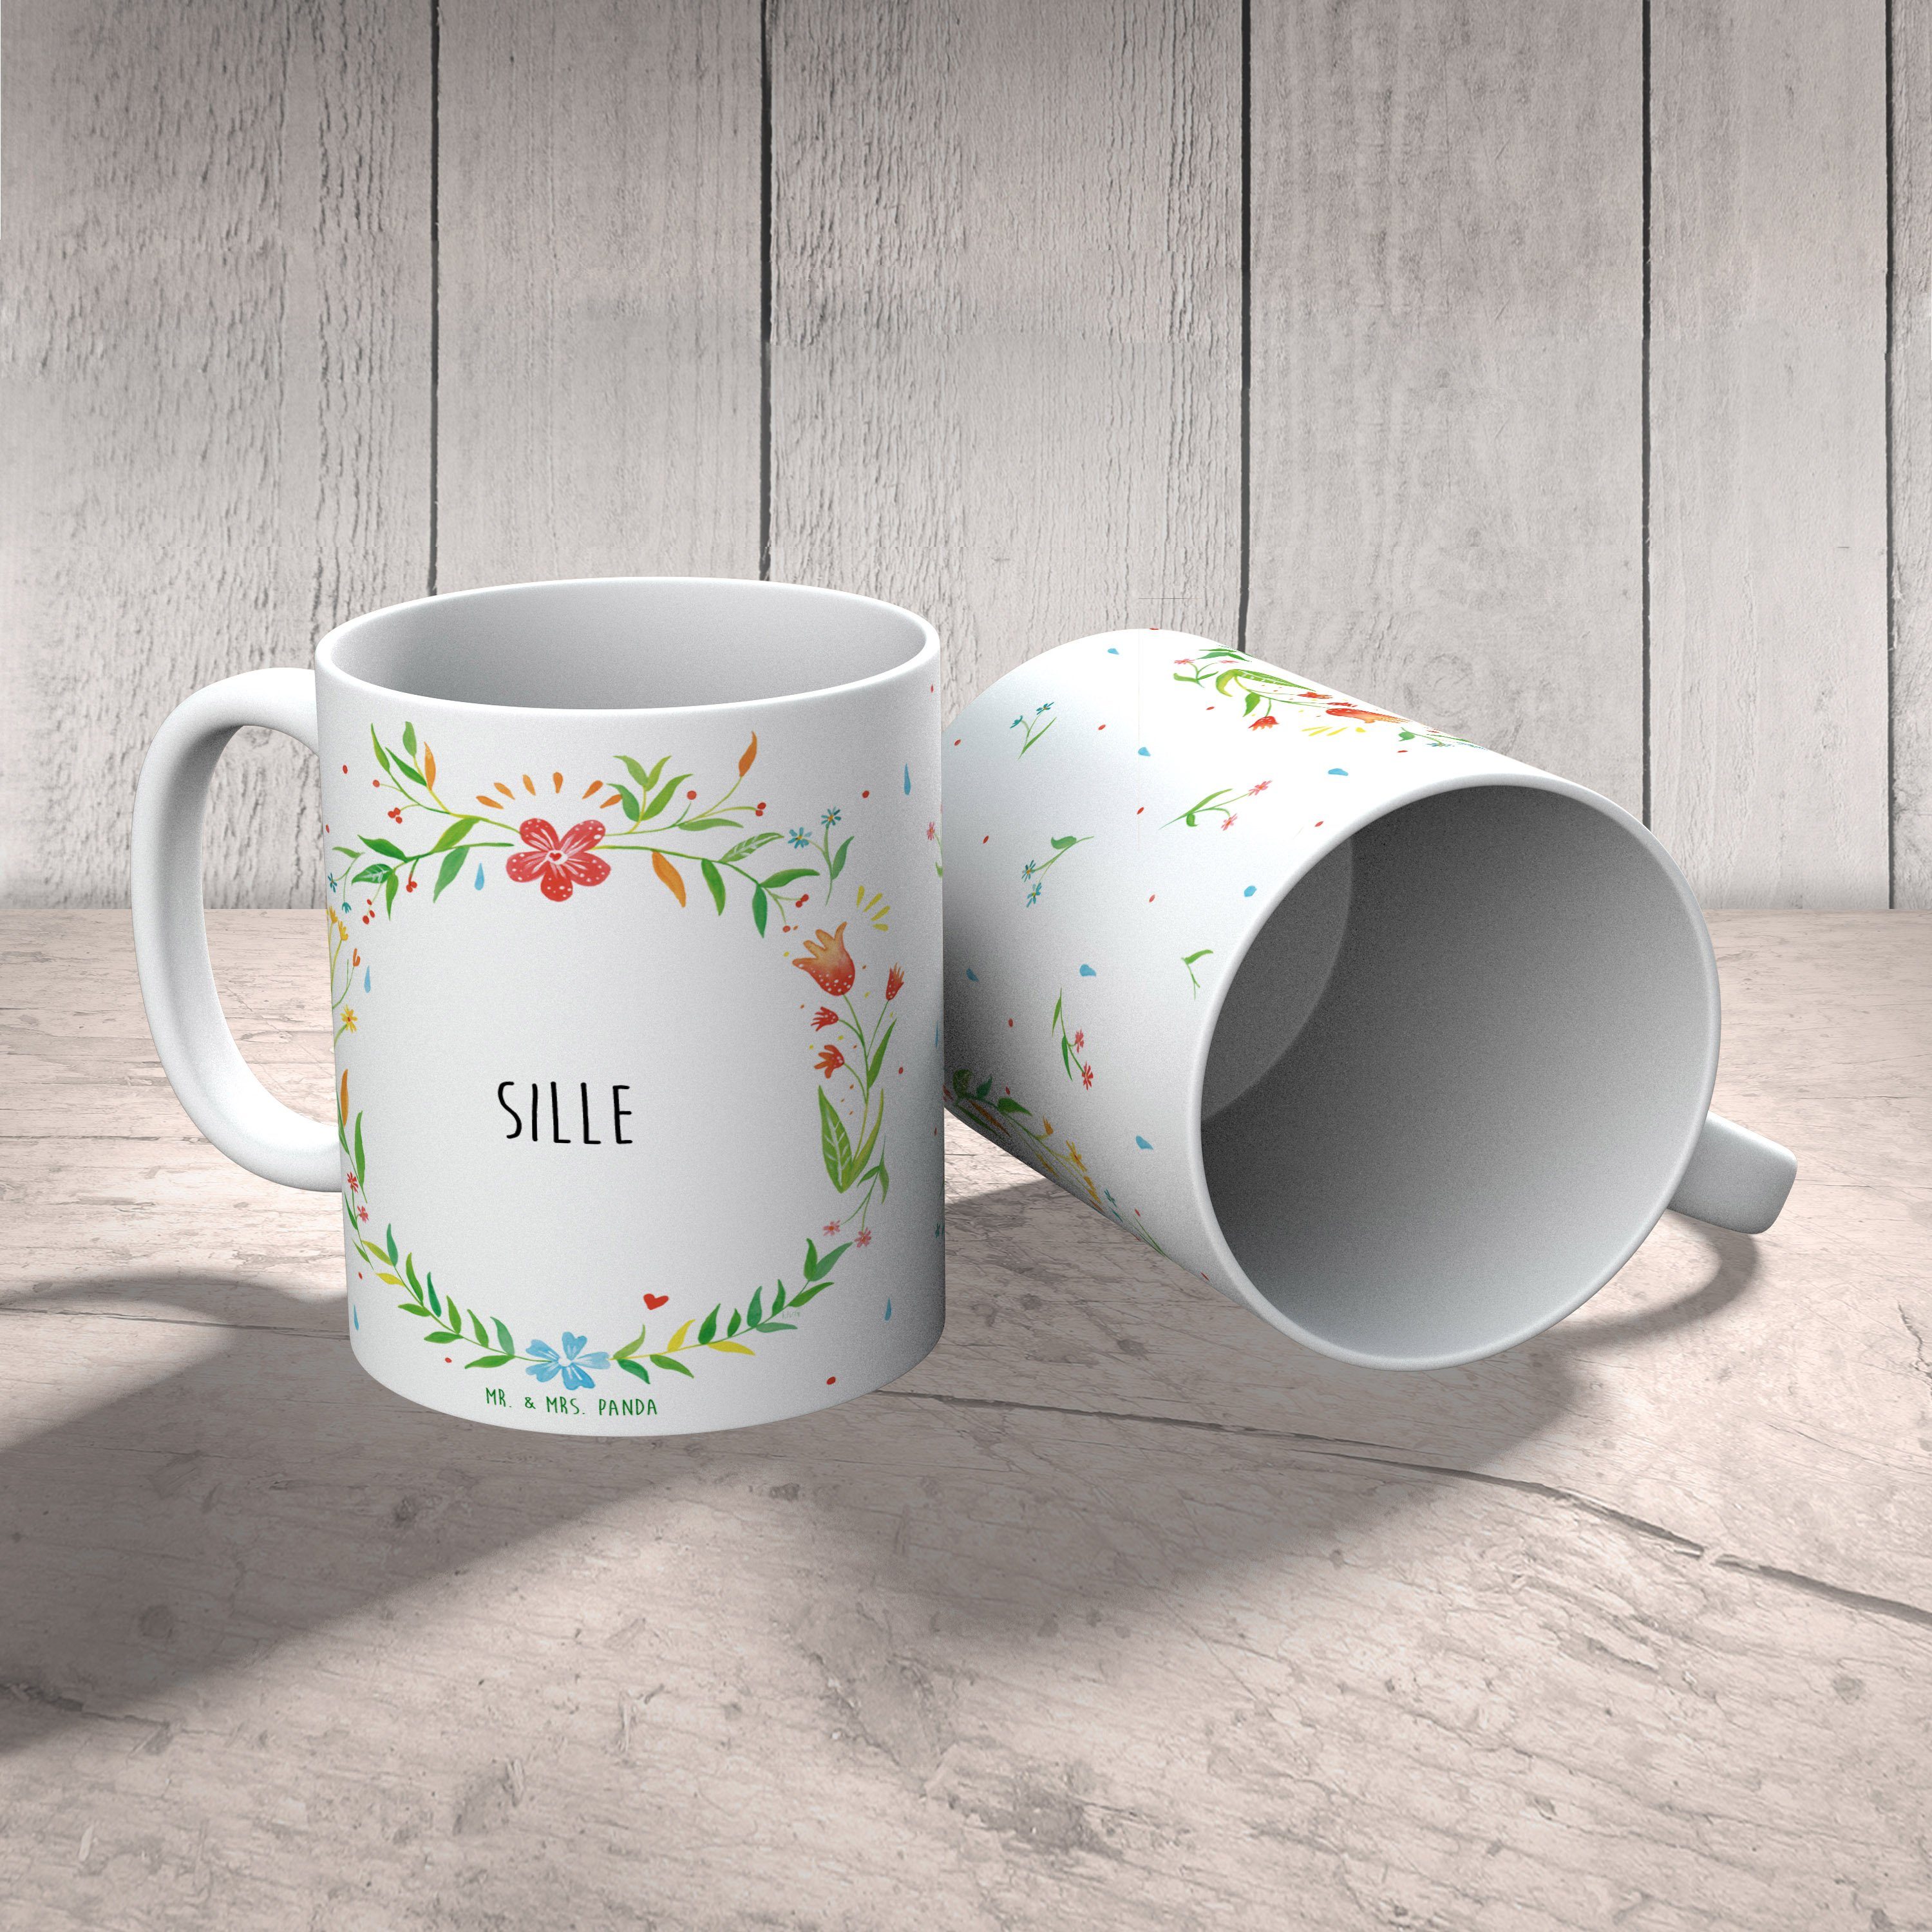 Mr. & Mrs. Teetasse, Kaffeetasse, Keramik - Kaffeebec, Büro Sille Tasse, Tasse Geschenk, Panda Tasse